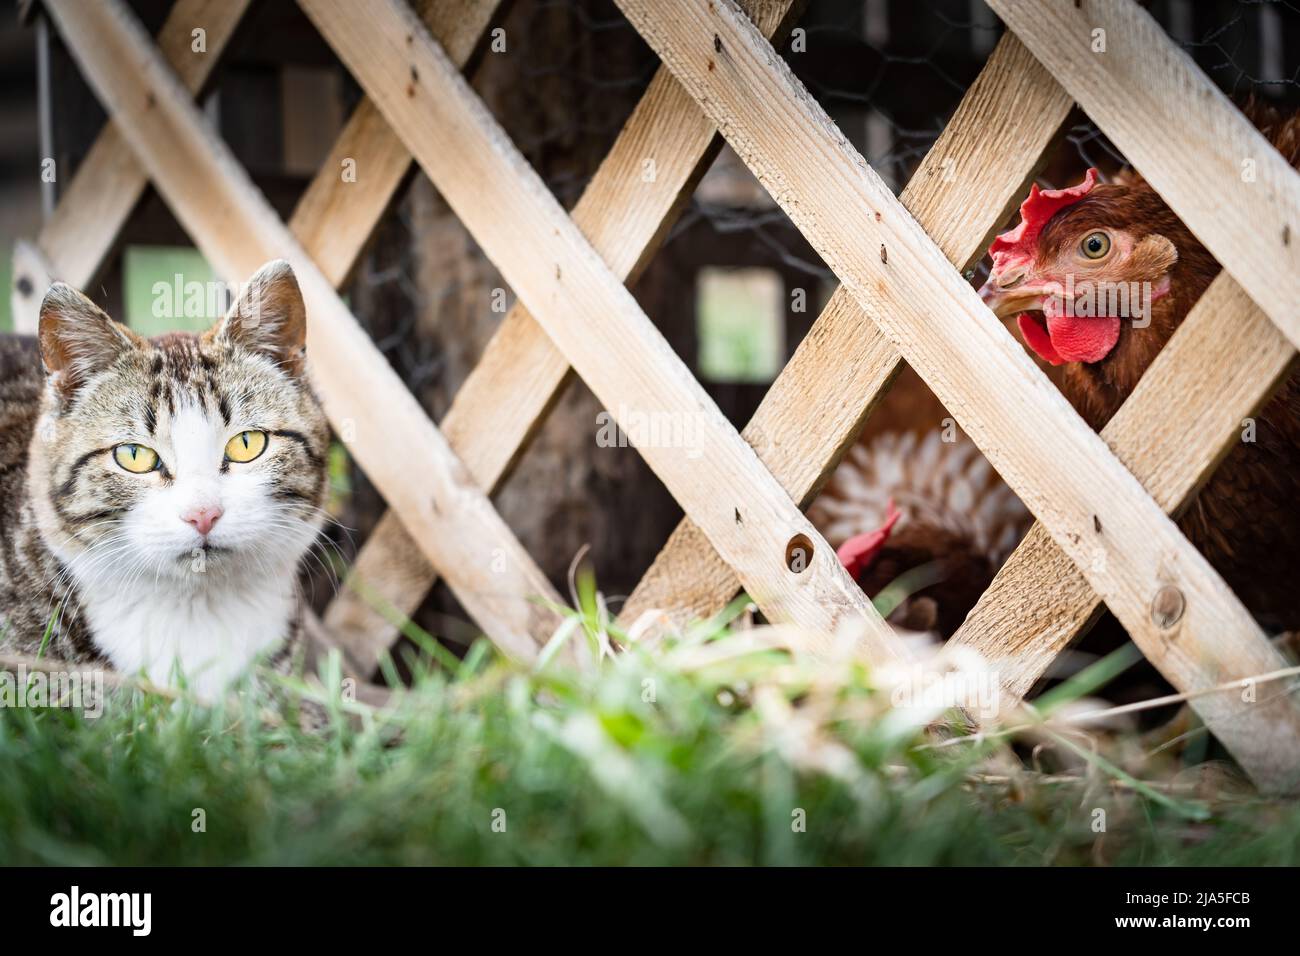 Eine junge Farmkatze beobachtet im Käfig gesperrte Hühner, die durch einen Holzzaun fressen, der für städtische Hühner in Alberta, Kanada, gebaut wurde Stockfoto